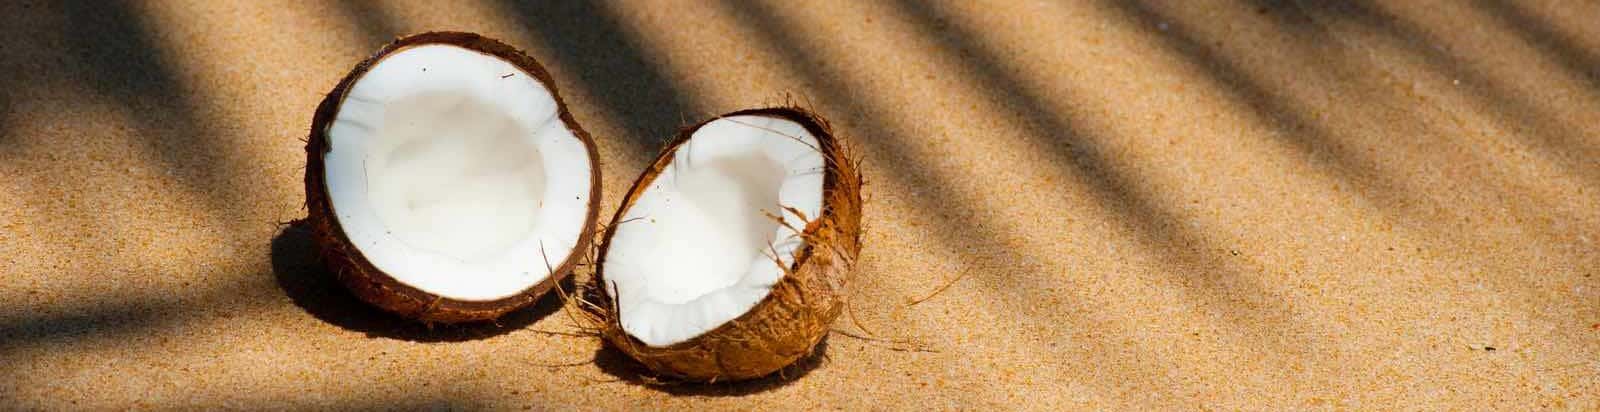 Является ли кокос аллергеном при гв